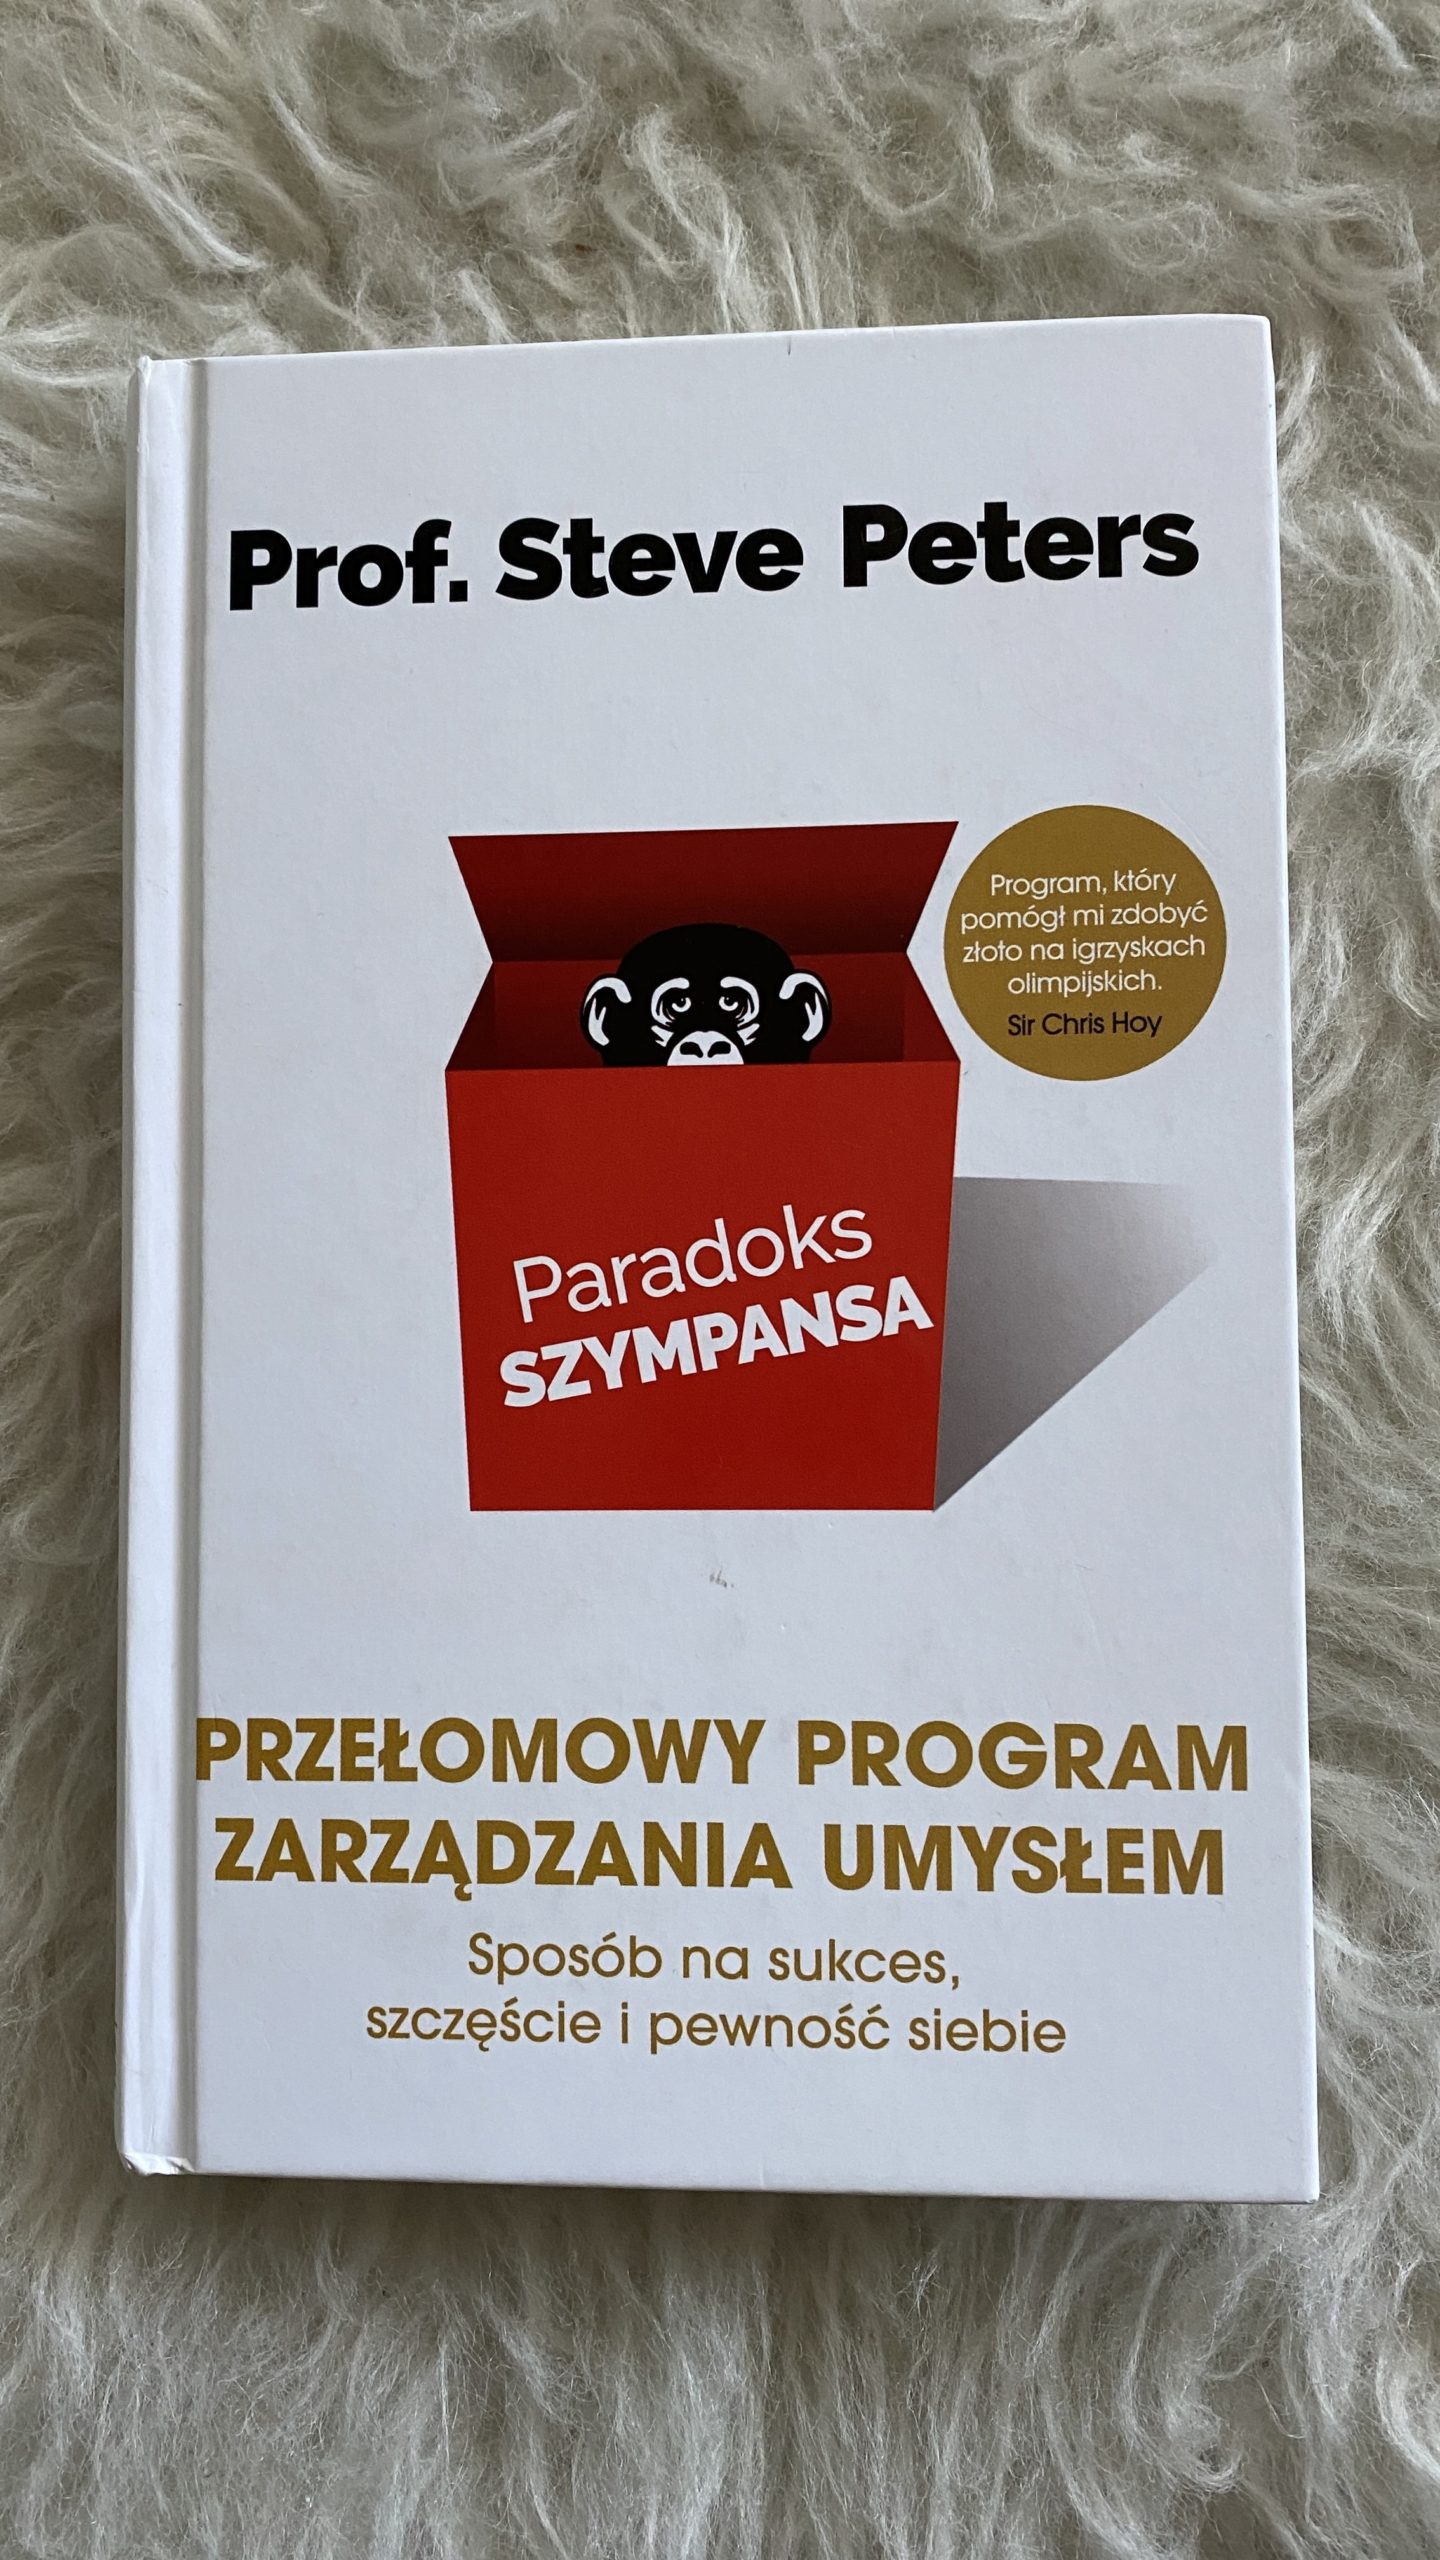 Steve Peters “Paradoks szympansa”